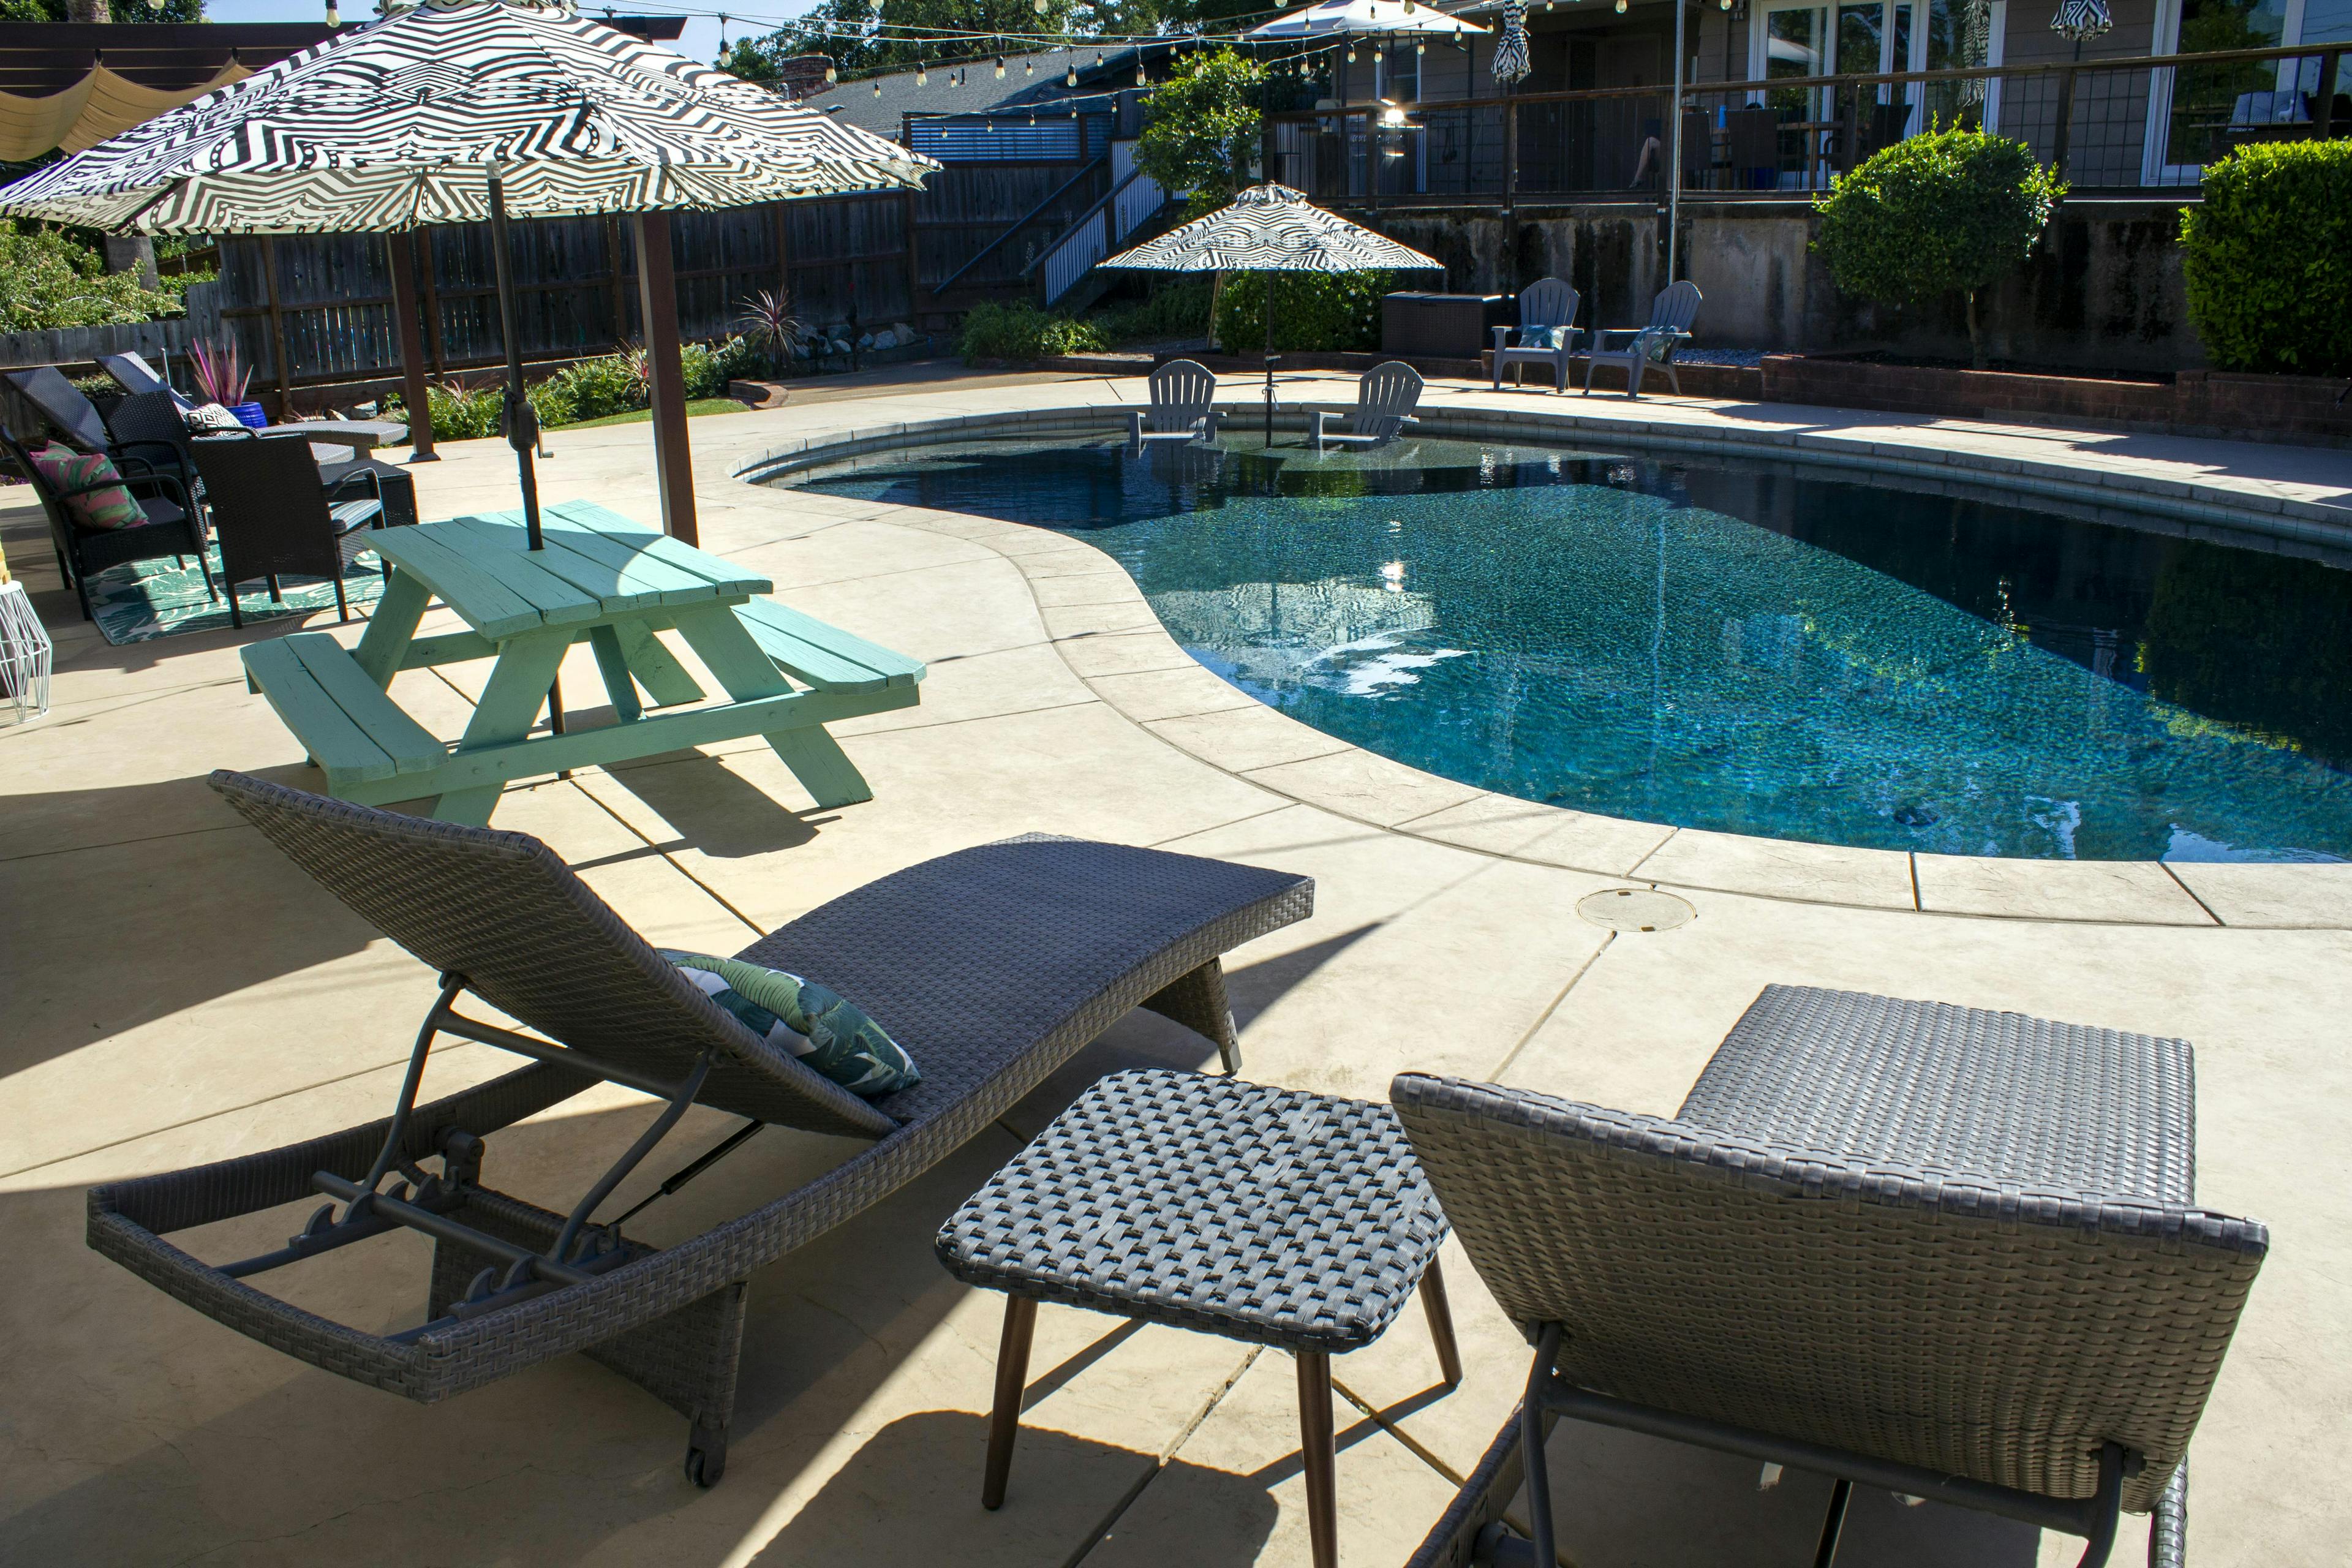 Staycation Escape: Big pool, Big fun! 💦